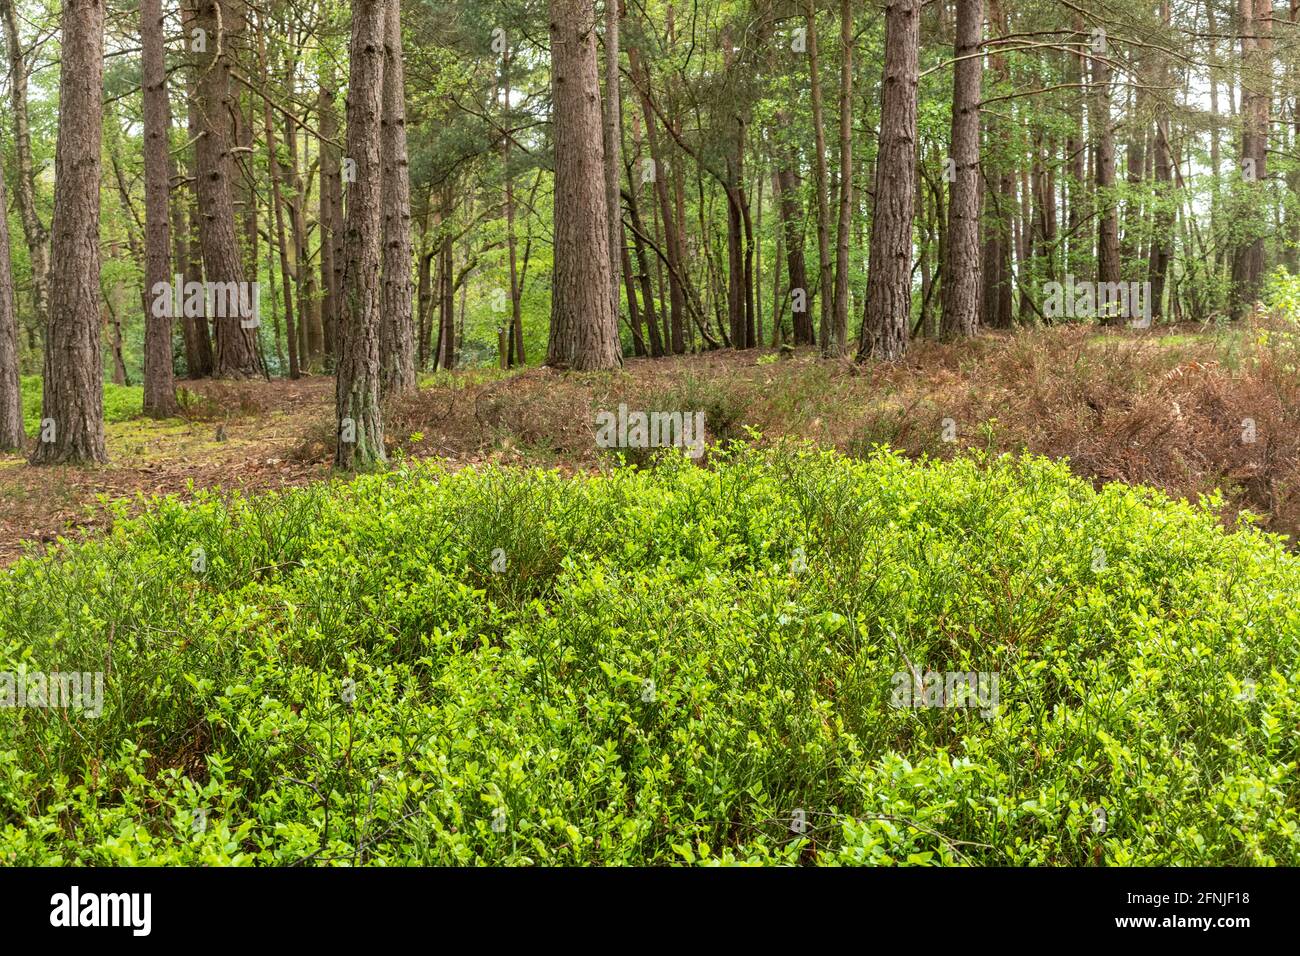 Unterstöckige Vegetation in einer waldplantage mit schottenkiefern (Pinus sylvestris) in Surrey, Großbritannien, einschließlich Heidelbeere (Vaccinium myrtillus) Stockfoto